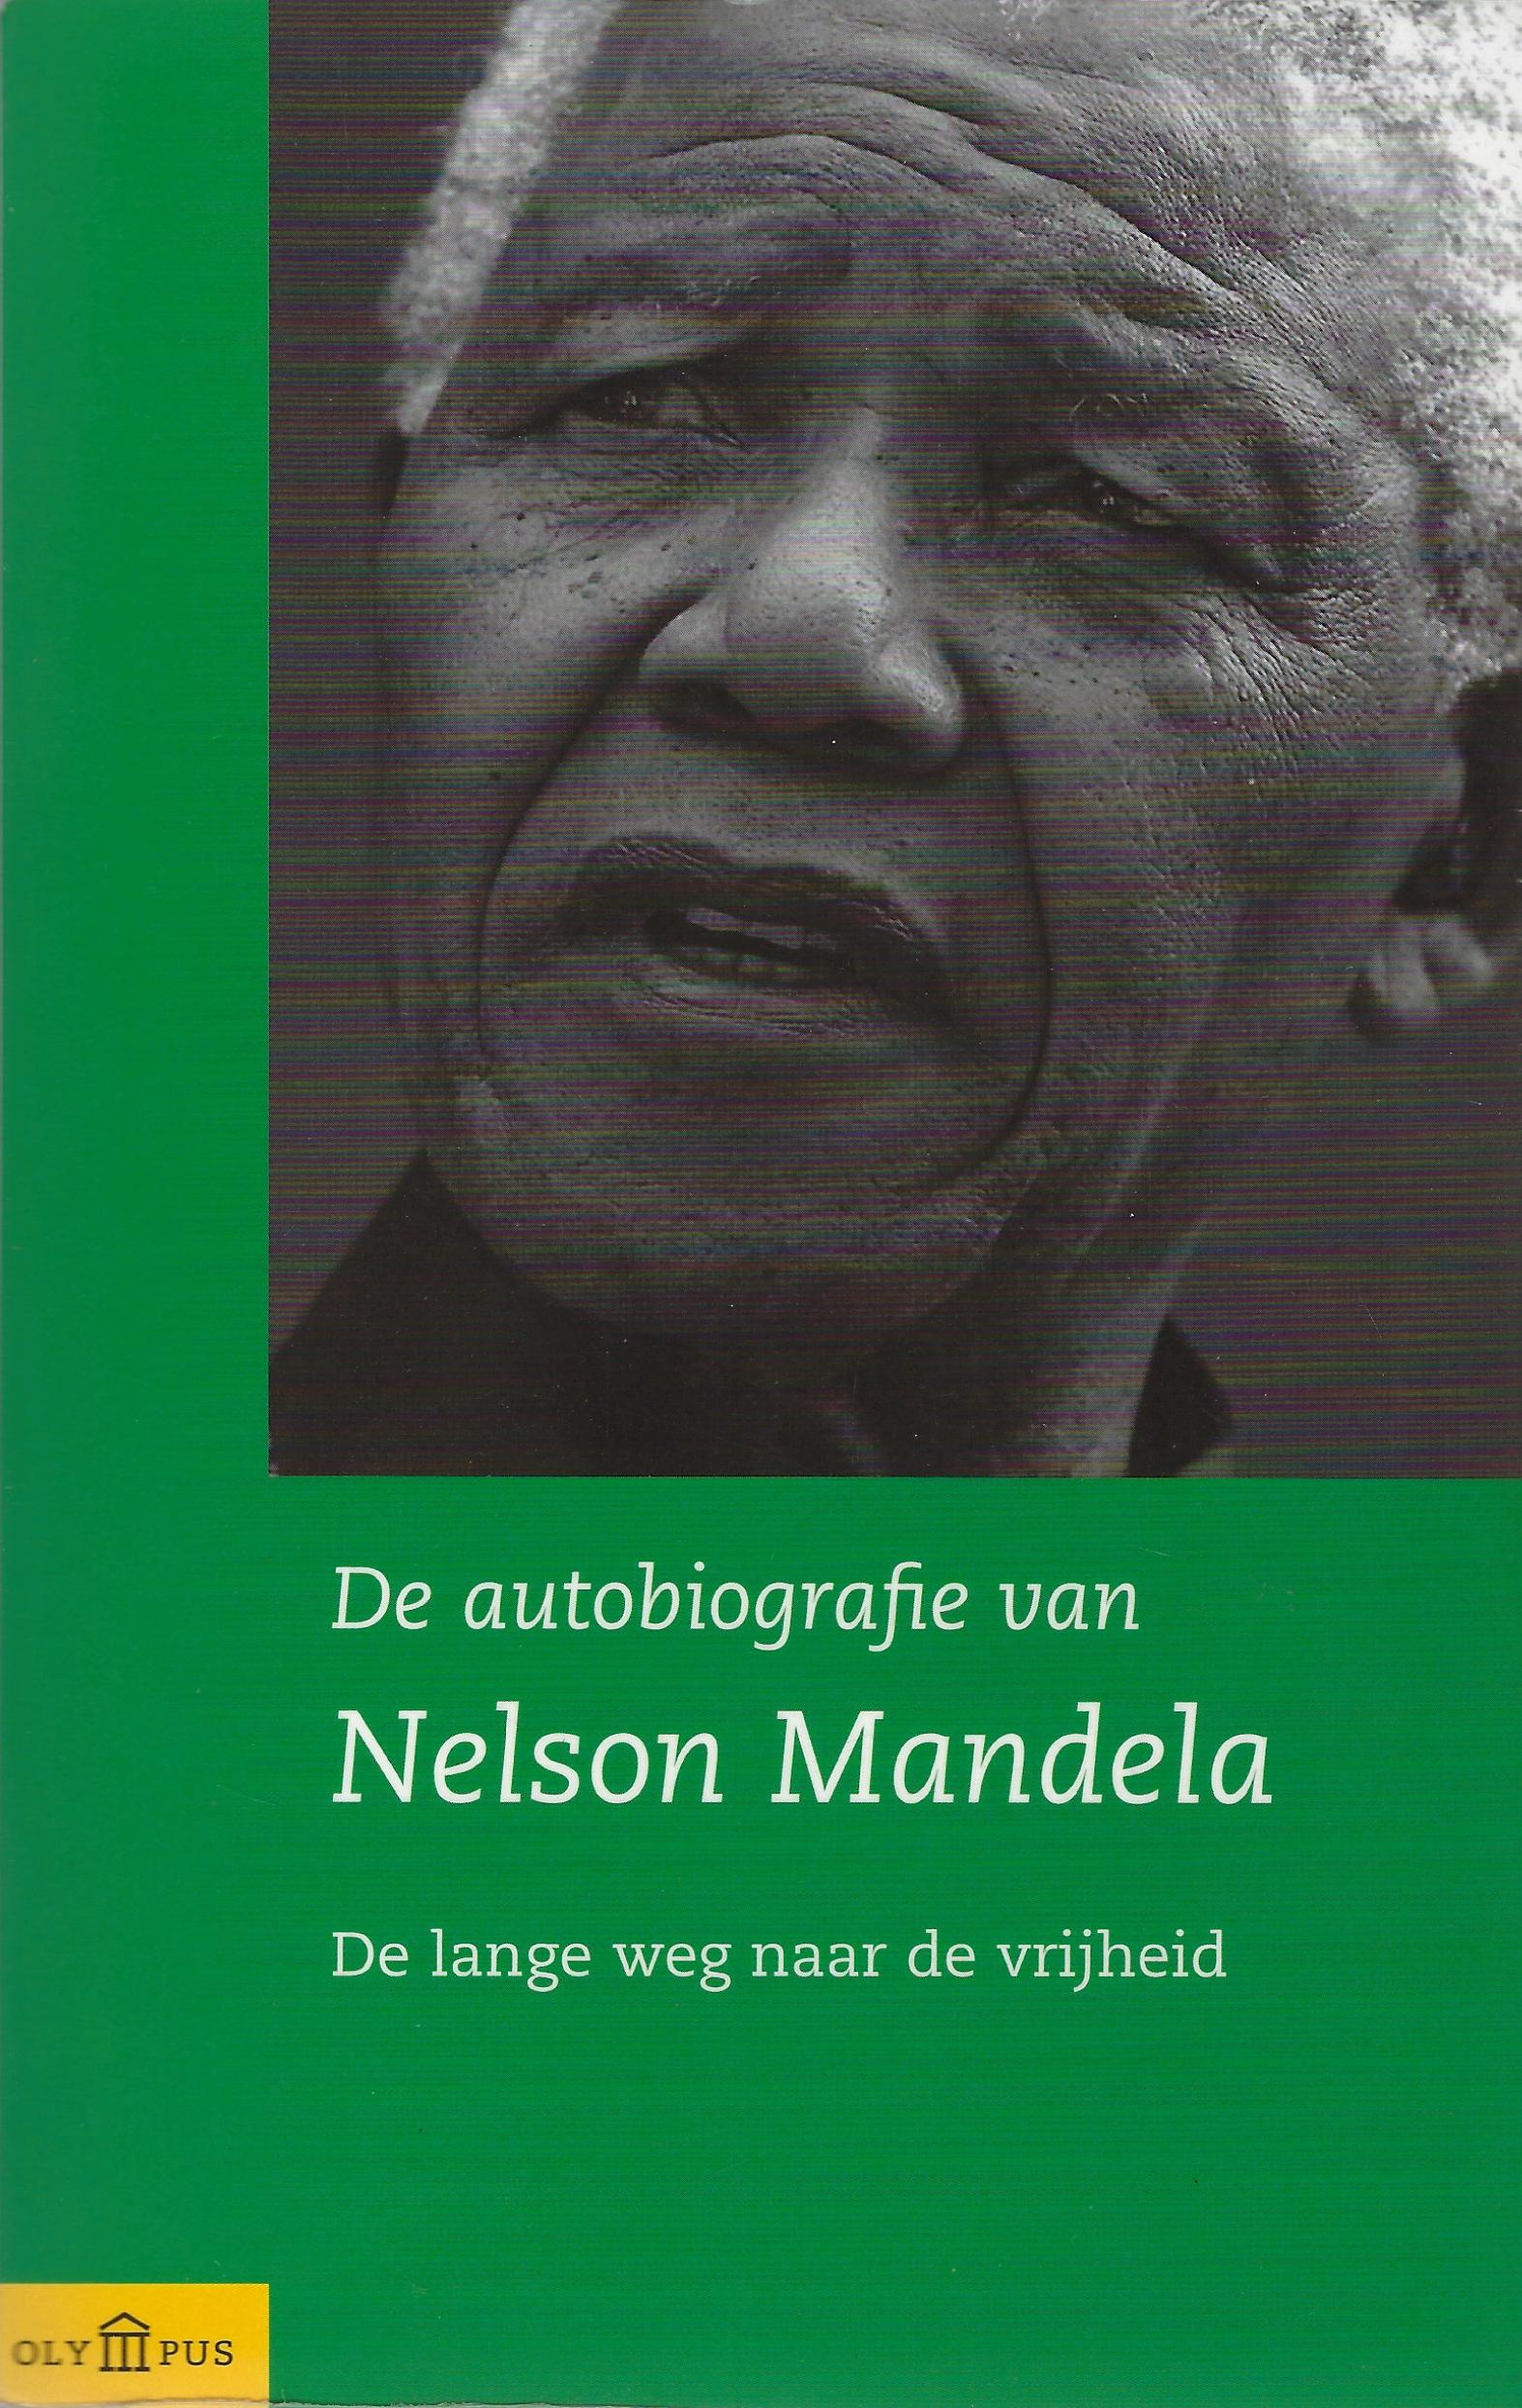 De autobiografie van Nelson Mandela - De lange weg naar de vrijheid (Nelson Mandela)